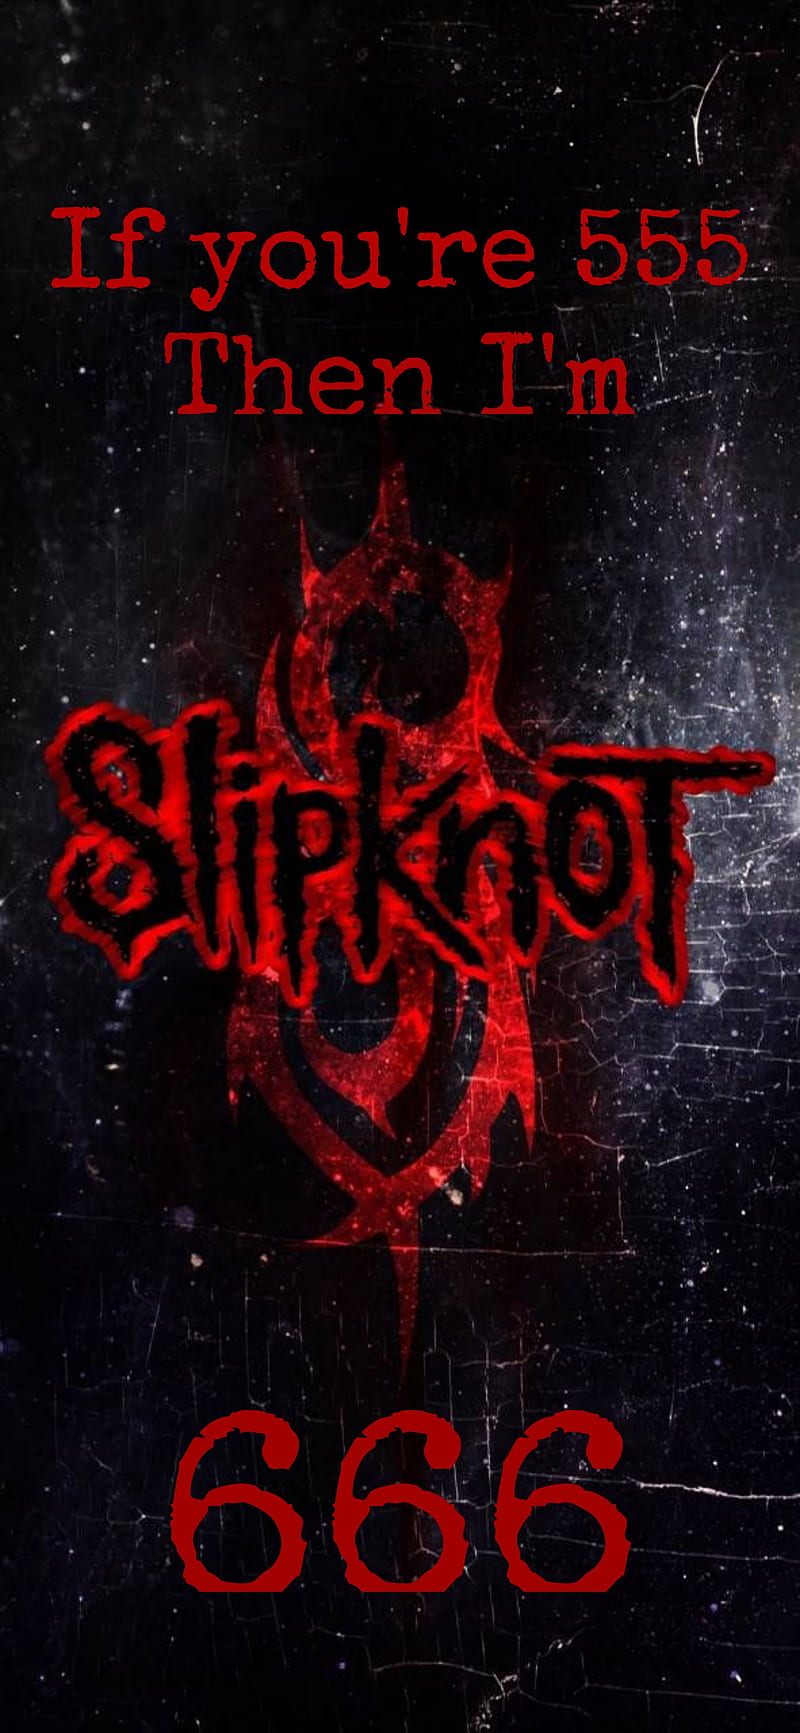 Slipknot, 666, metal, HD phone wallpaper